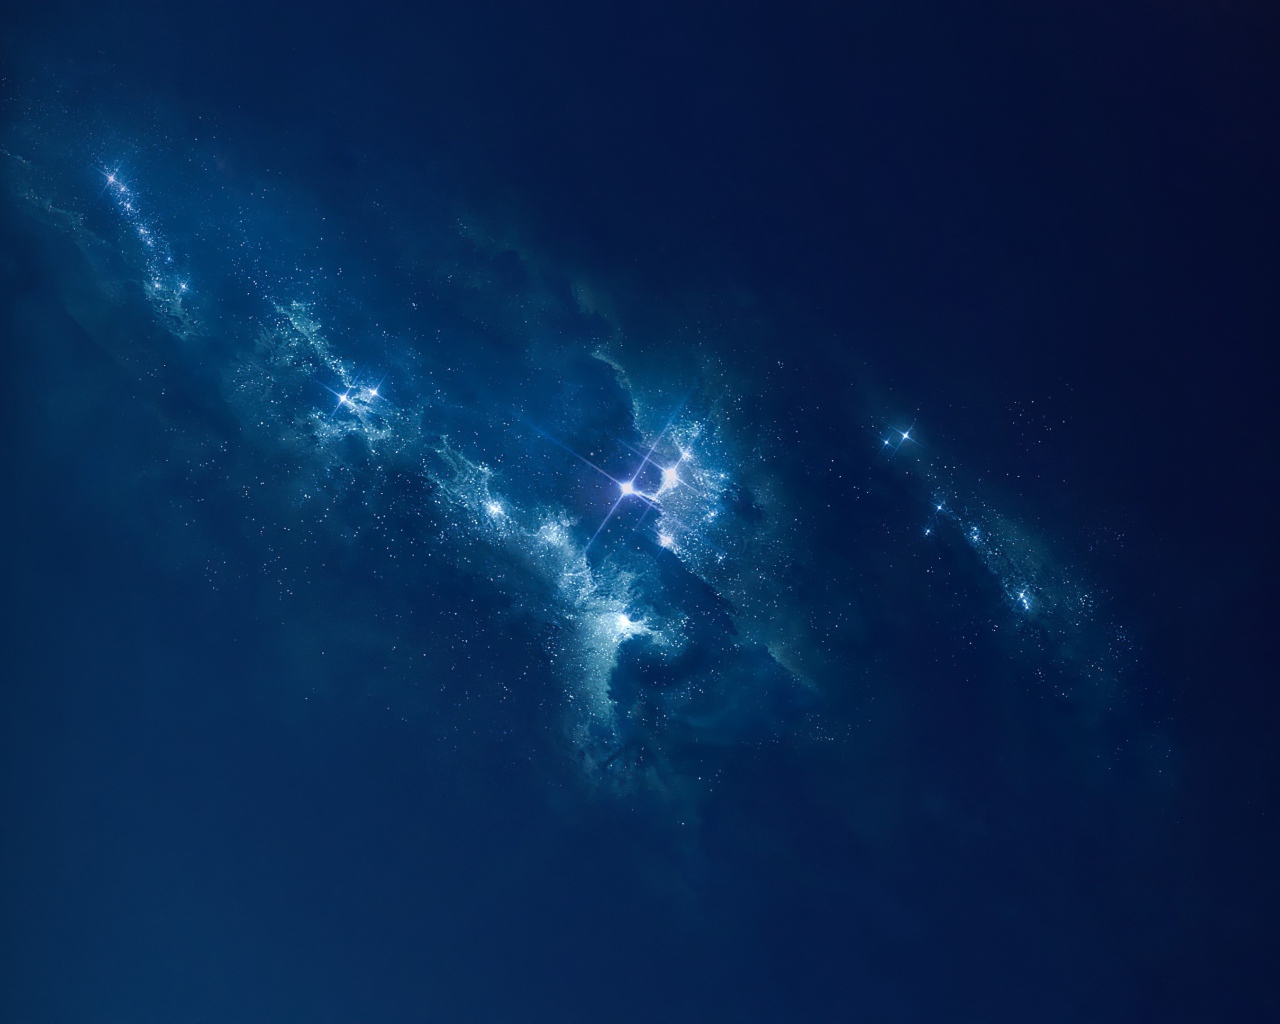 Млечный путь и яркие звезды в голубом ночном небе 